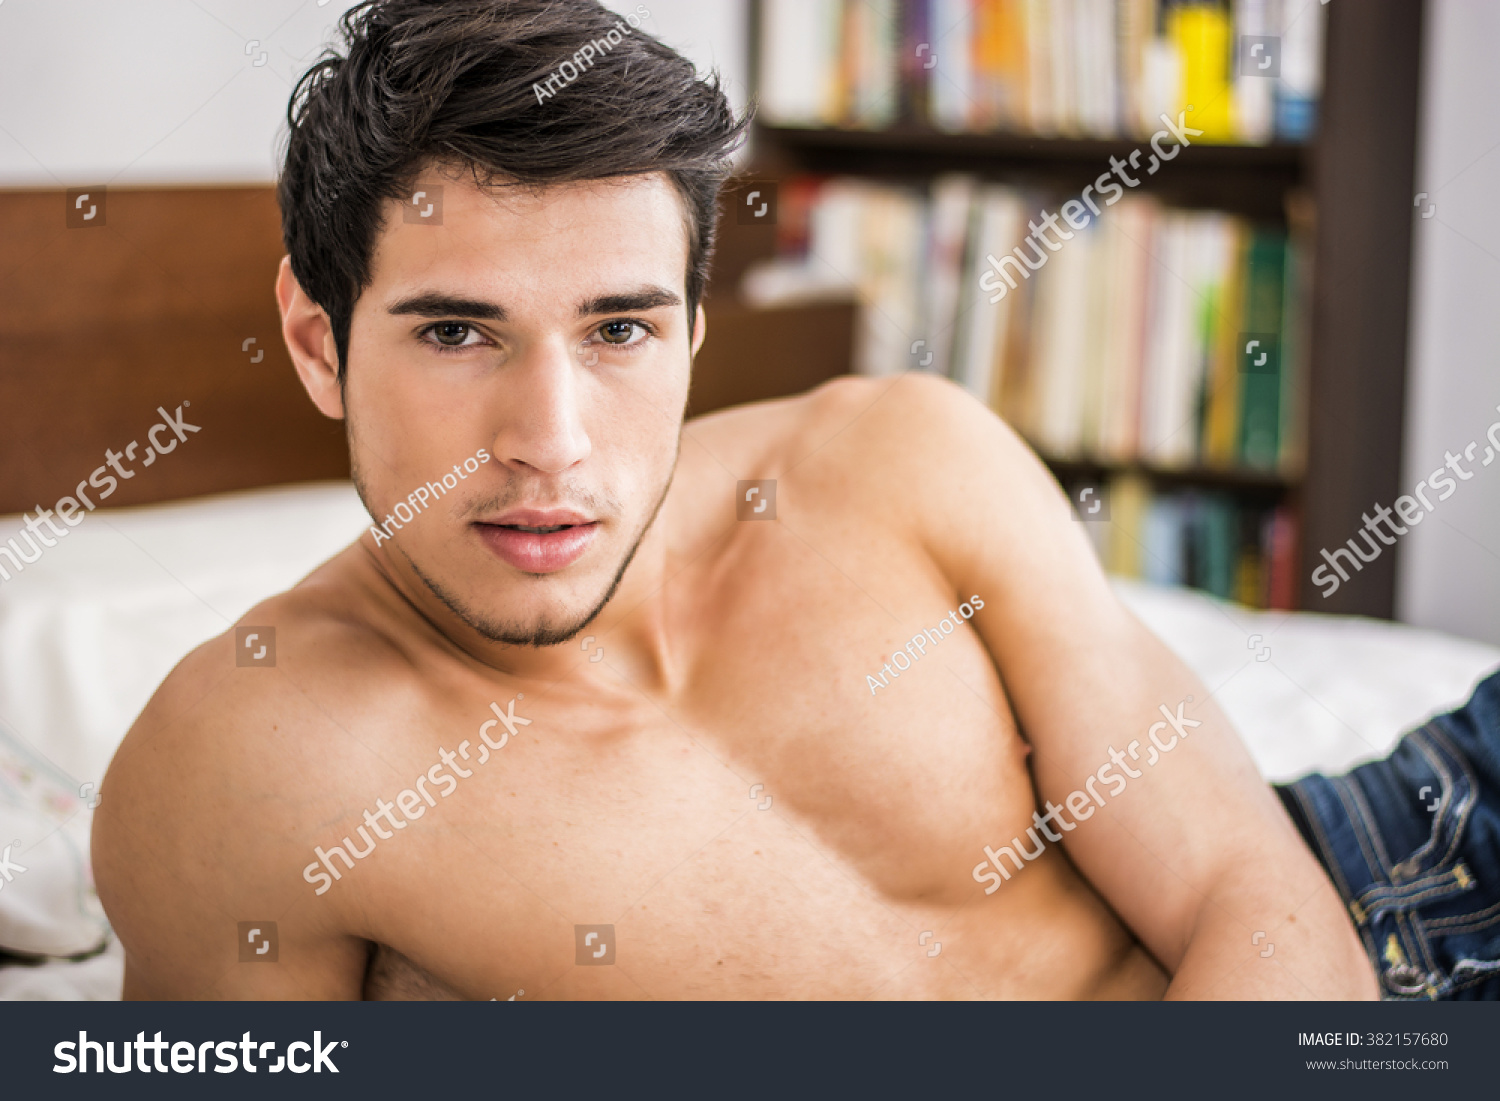 Shirtless Sexy Male Model Lying Alone Stok Fotoğrafı 382157680 Shutterstock